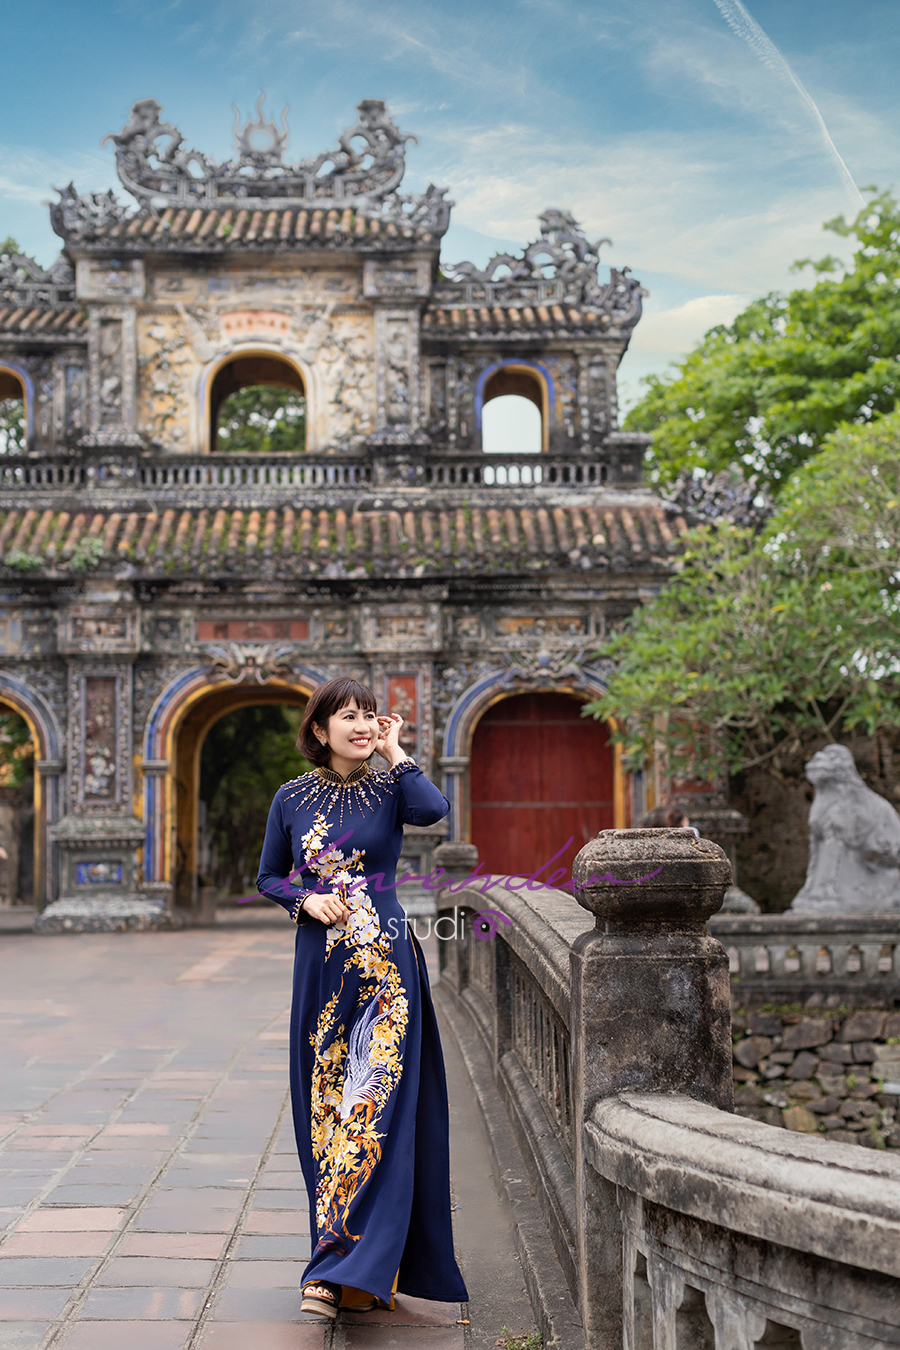 Giá chụp ảnh nghệ thuật ở Đà Nẵng bao nhiêu